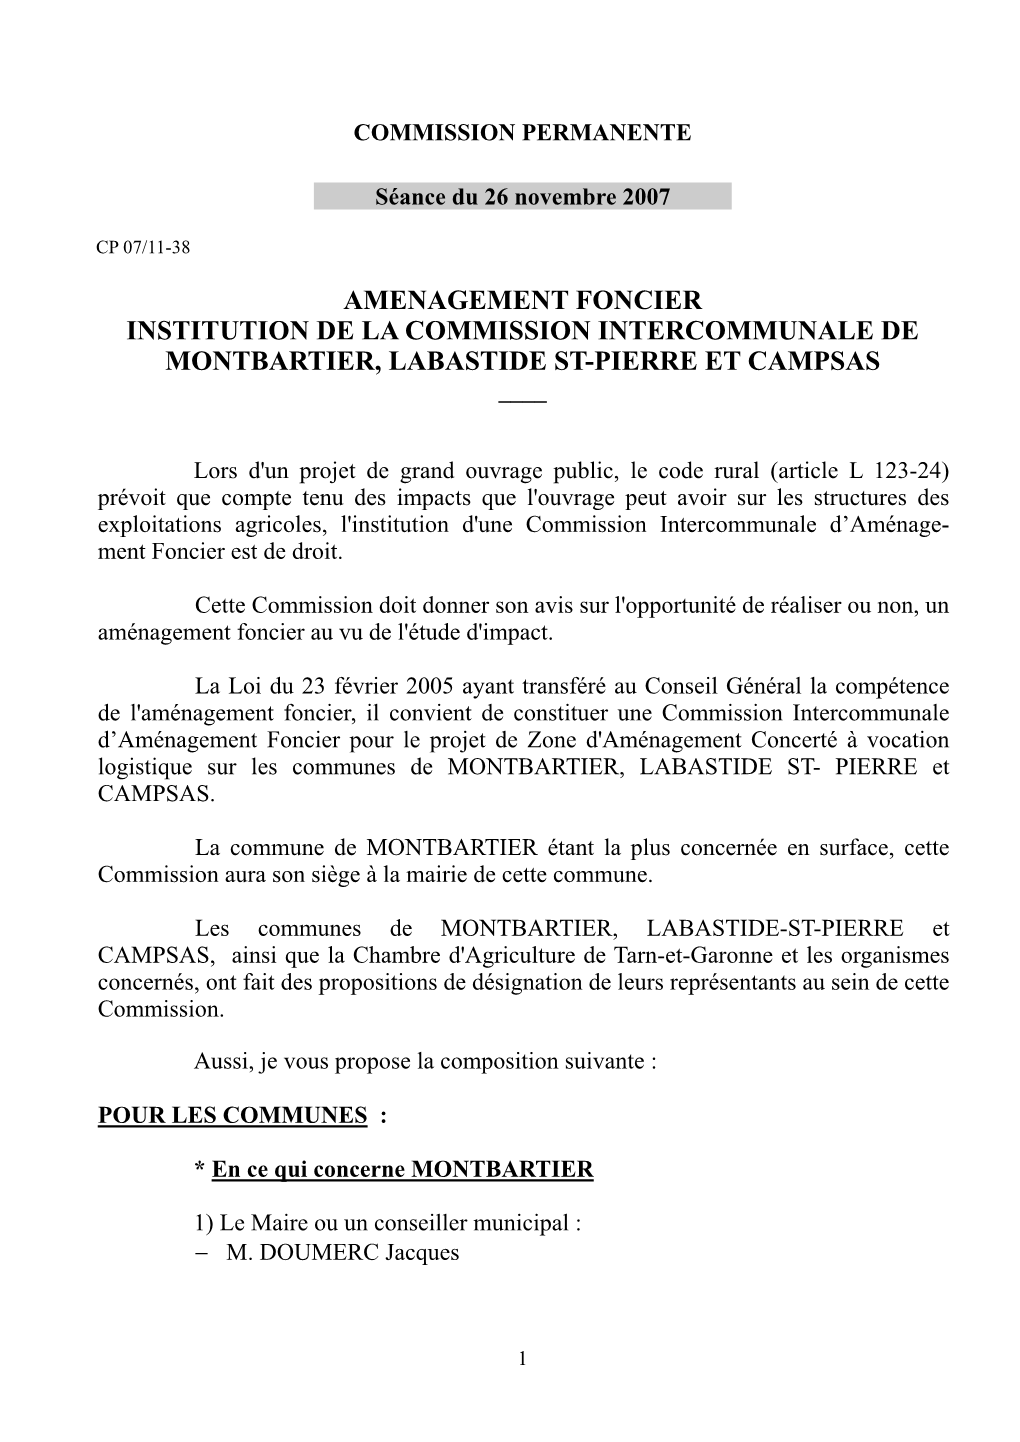 Amenagement Foncier Institution De La Commission Intercommunale De Montbartier, Labastide St-Pierre Et Campsas ____